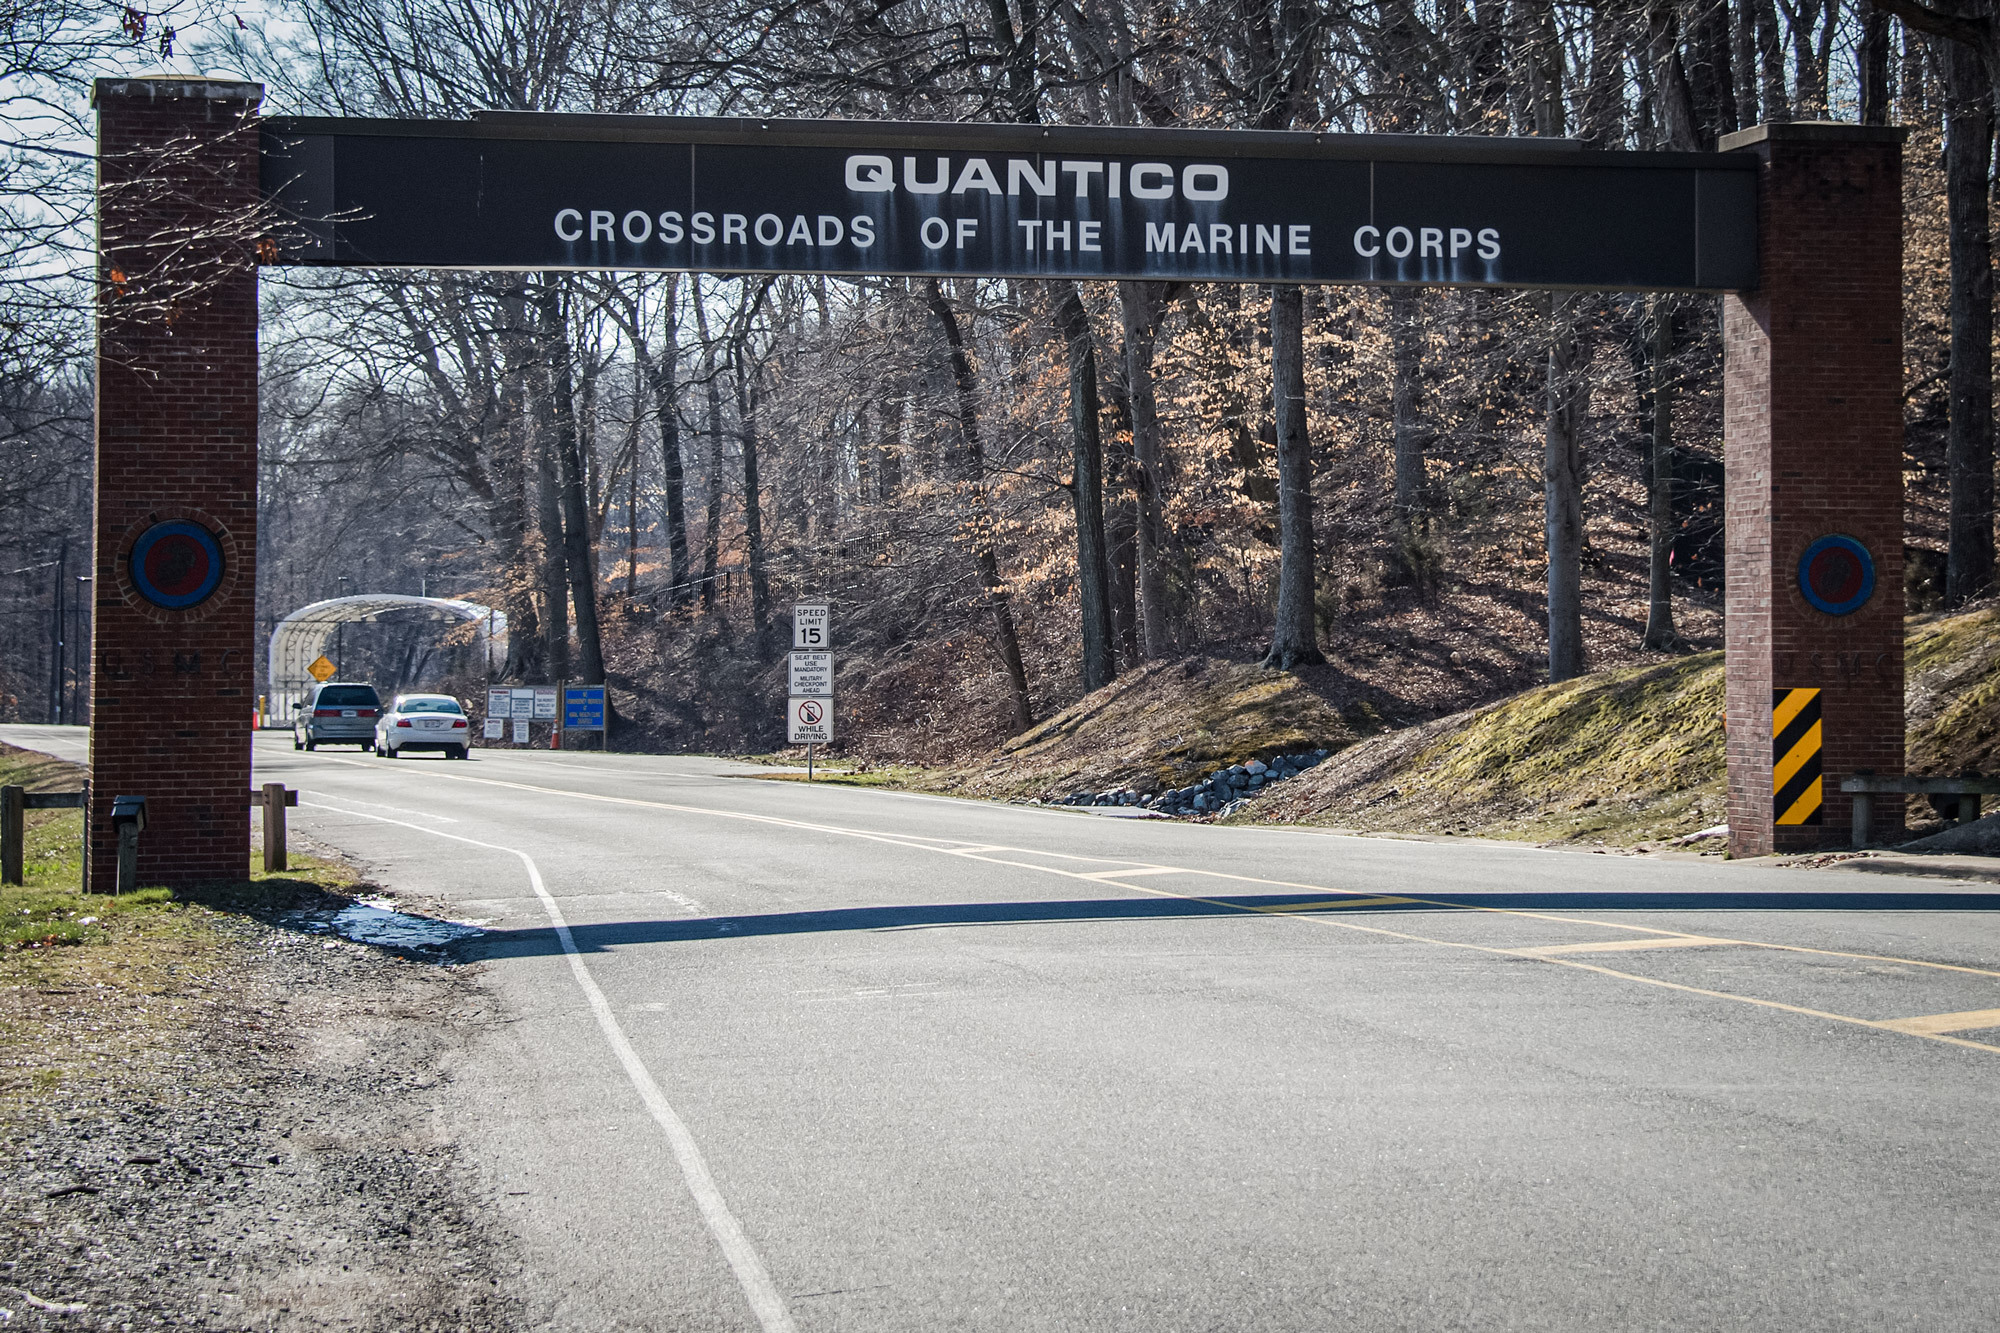 Cổng chính của Căn cứ Thủy quân lục chiến Hoa Kỳ ở Quantico, Virginia, vào ngày 22/03/2013. Hai công dân Jordan đã cố gắng đi vào căn cứ này hôm 03/05, và một trong số họ là người ngoại quốc nhập cư bất hợp pháp nằm trong danh sách theo dõi khủng bố. (Ảnh: Jim Watson/AFP qua Getty Images)